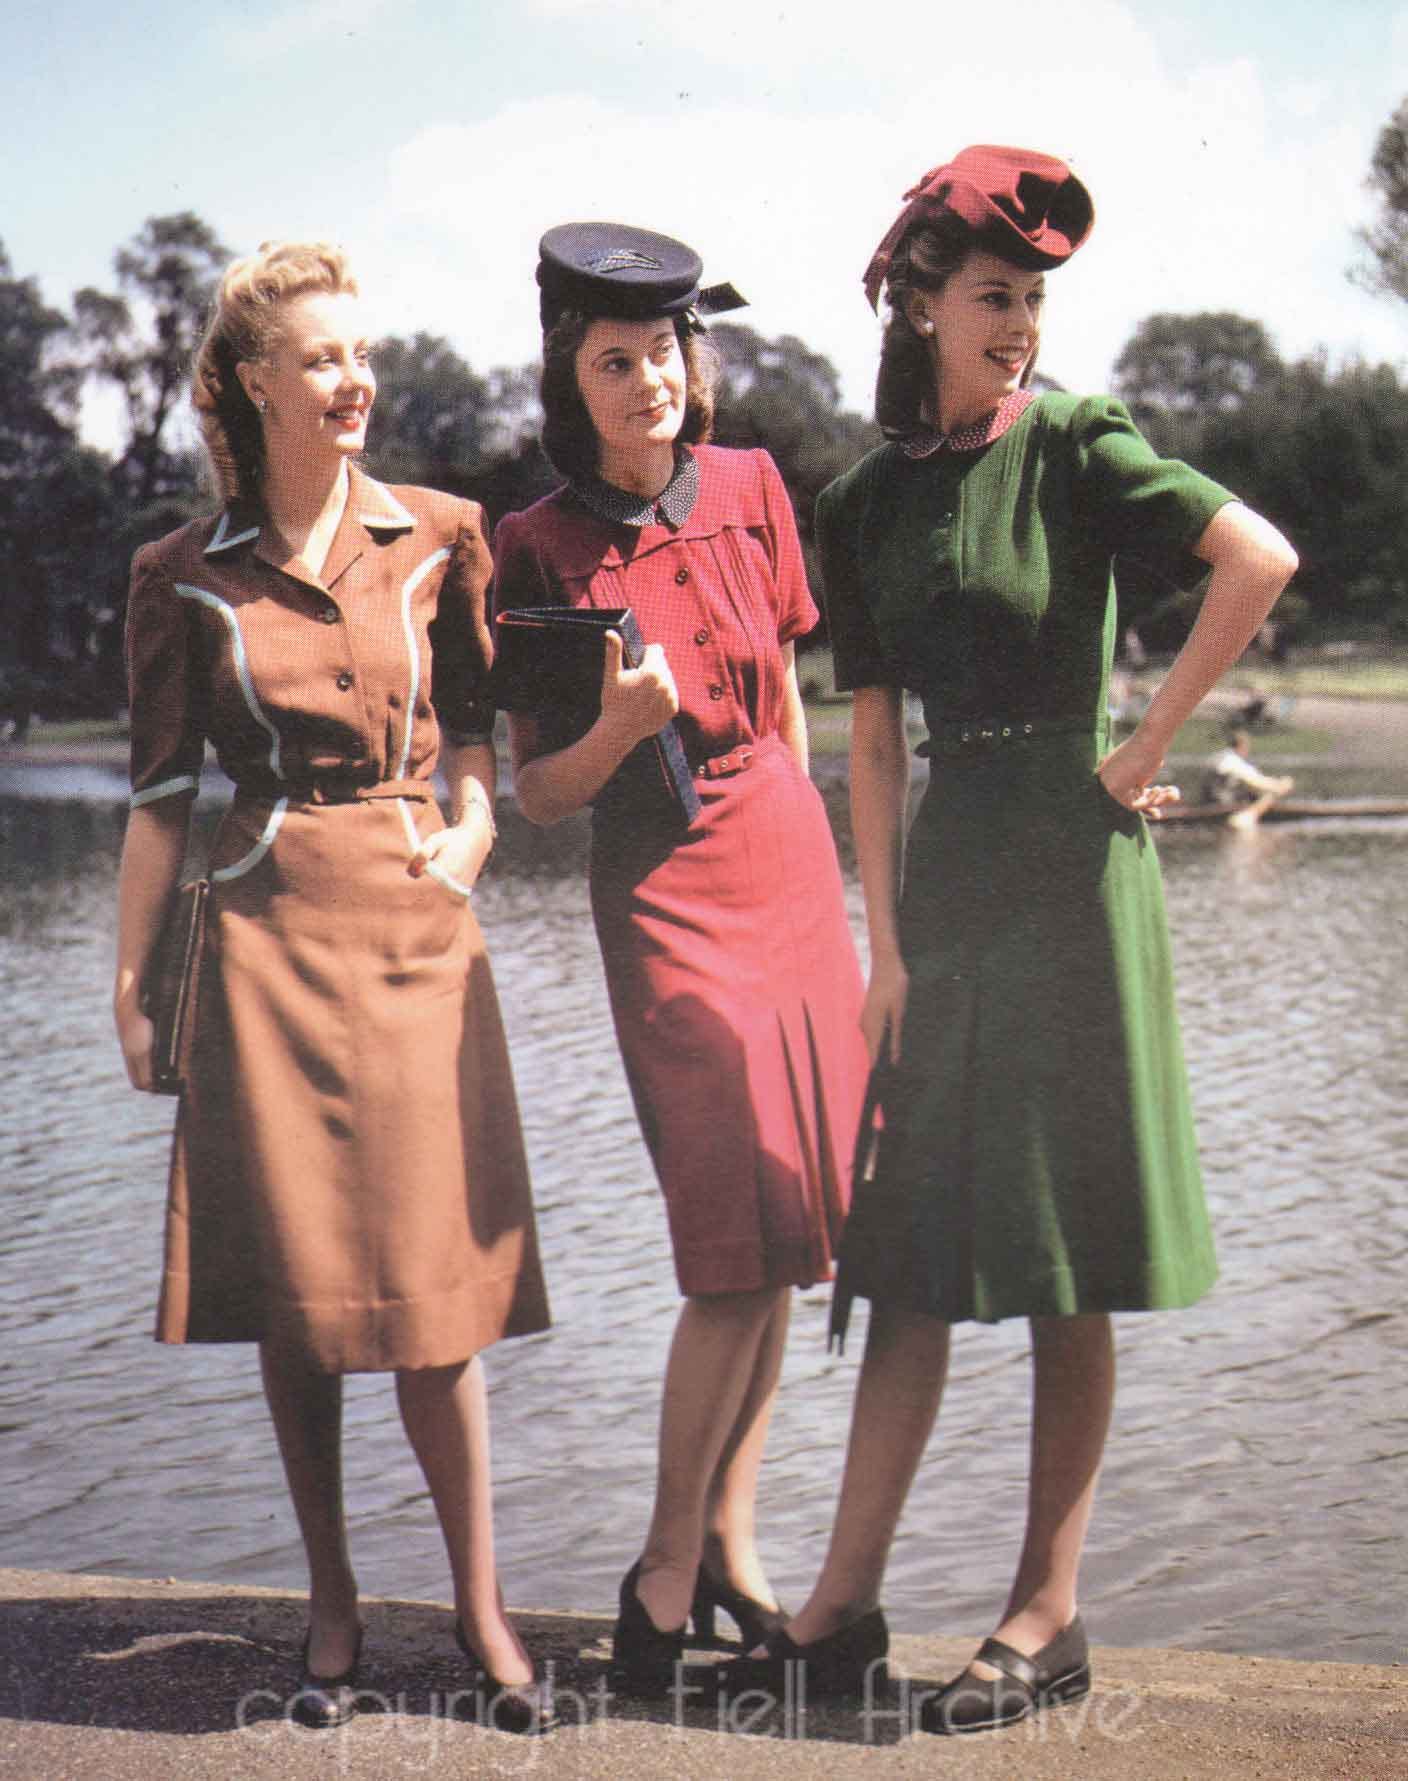 1940s ladies fashion